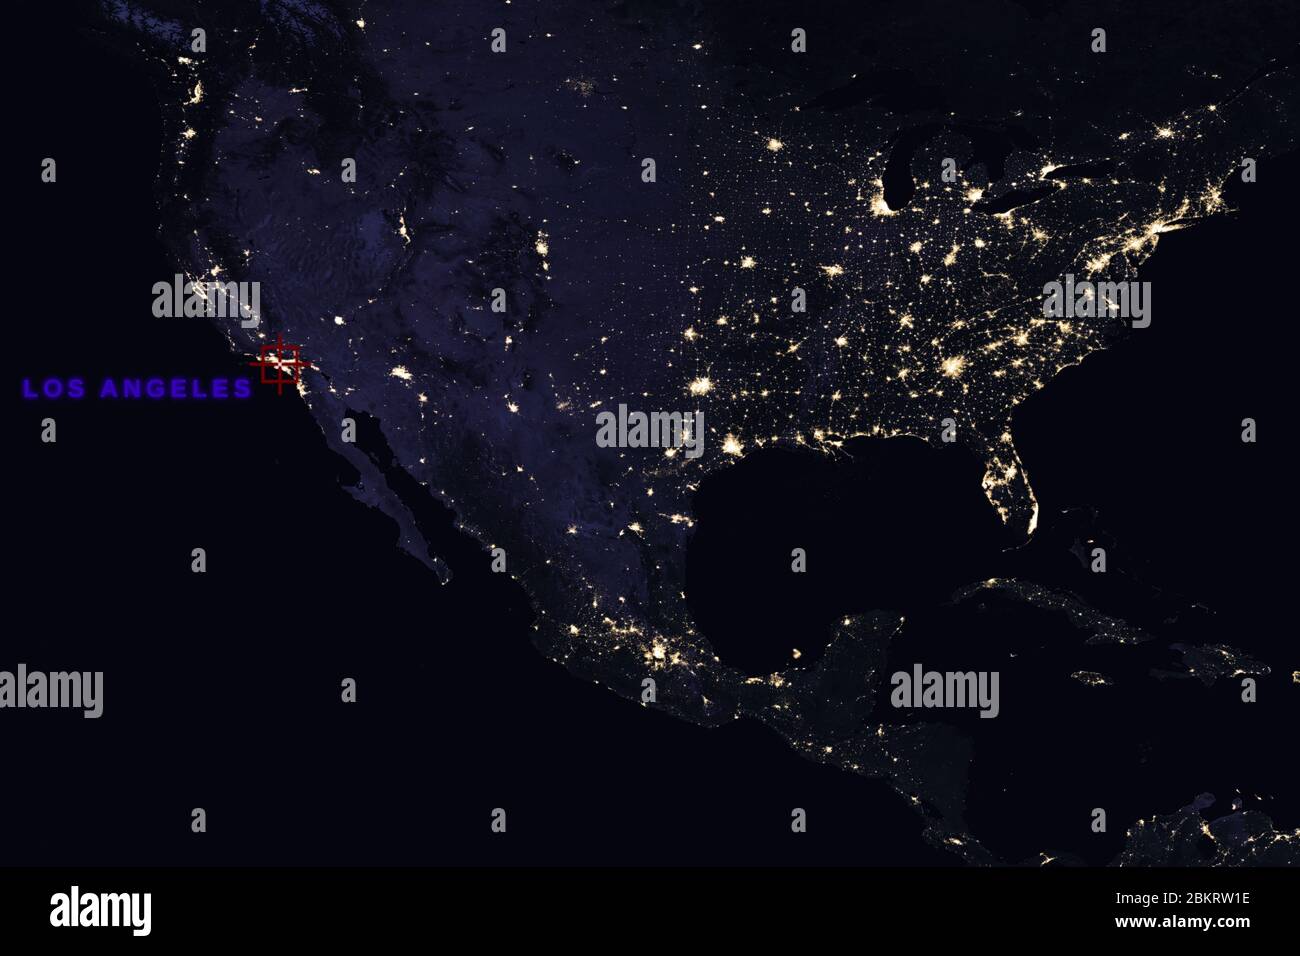 Hochauflösende Karte Zusammenstellung der USA bei Nacht, die Los Angeles, Kalifornien, zeigen - Elemente dieses Bildes, die von der NASA bereitgestellt wurden Stockfoto